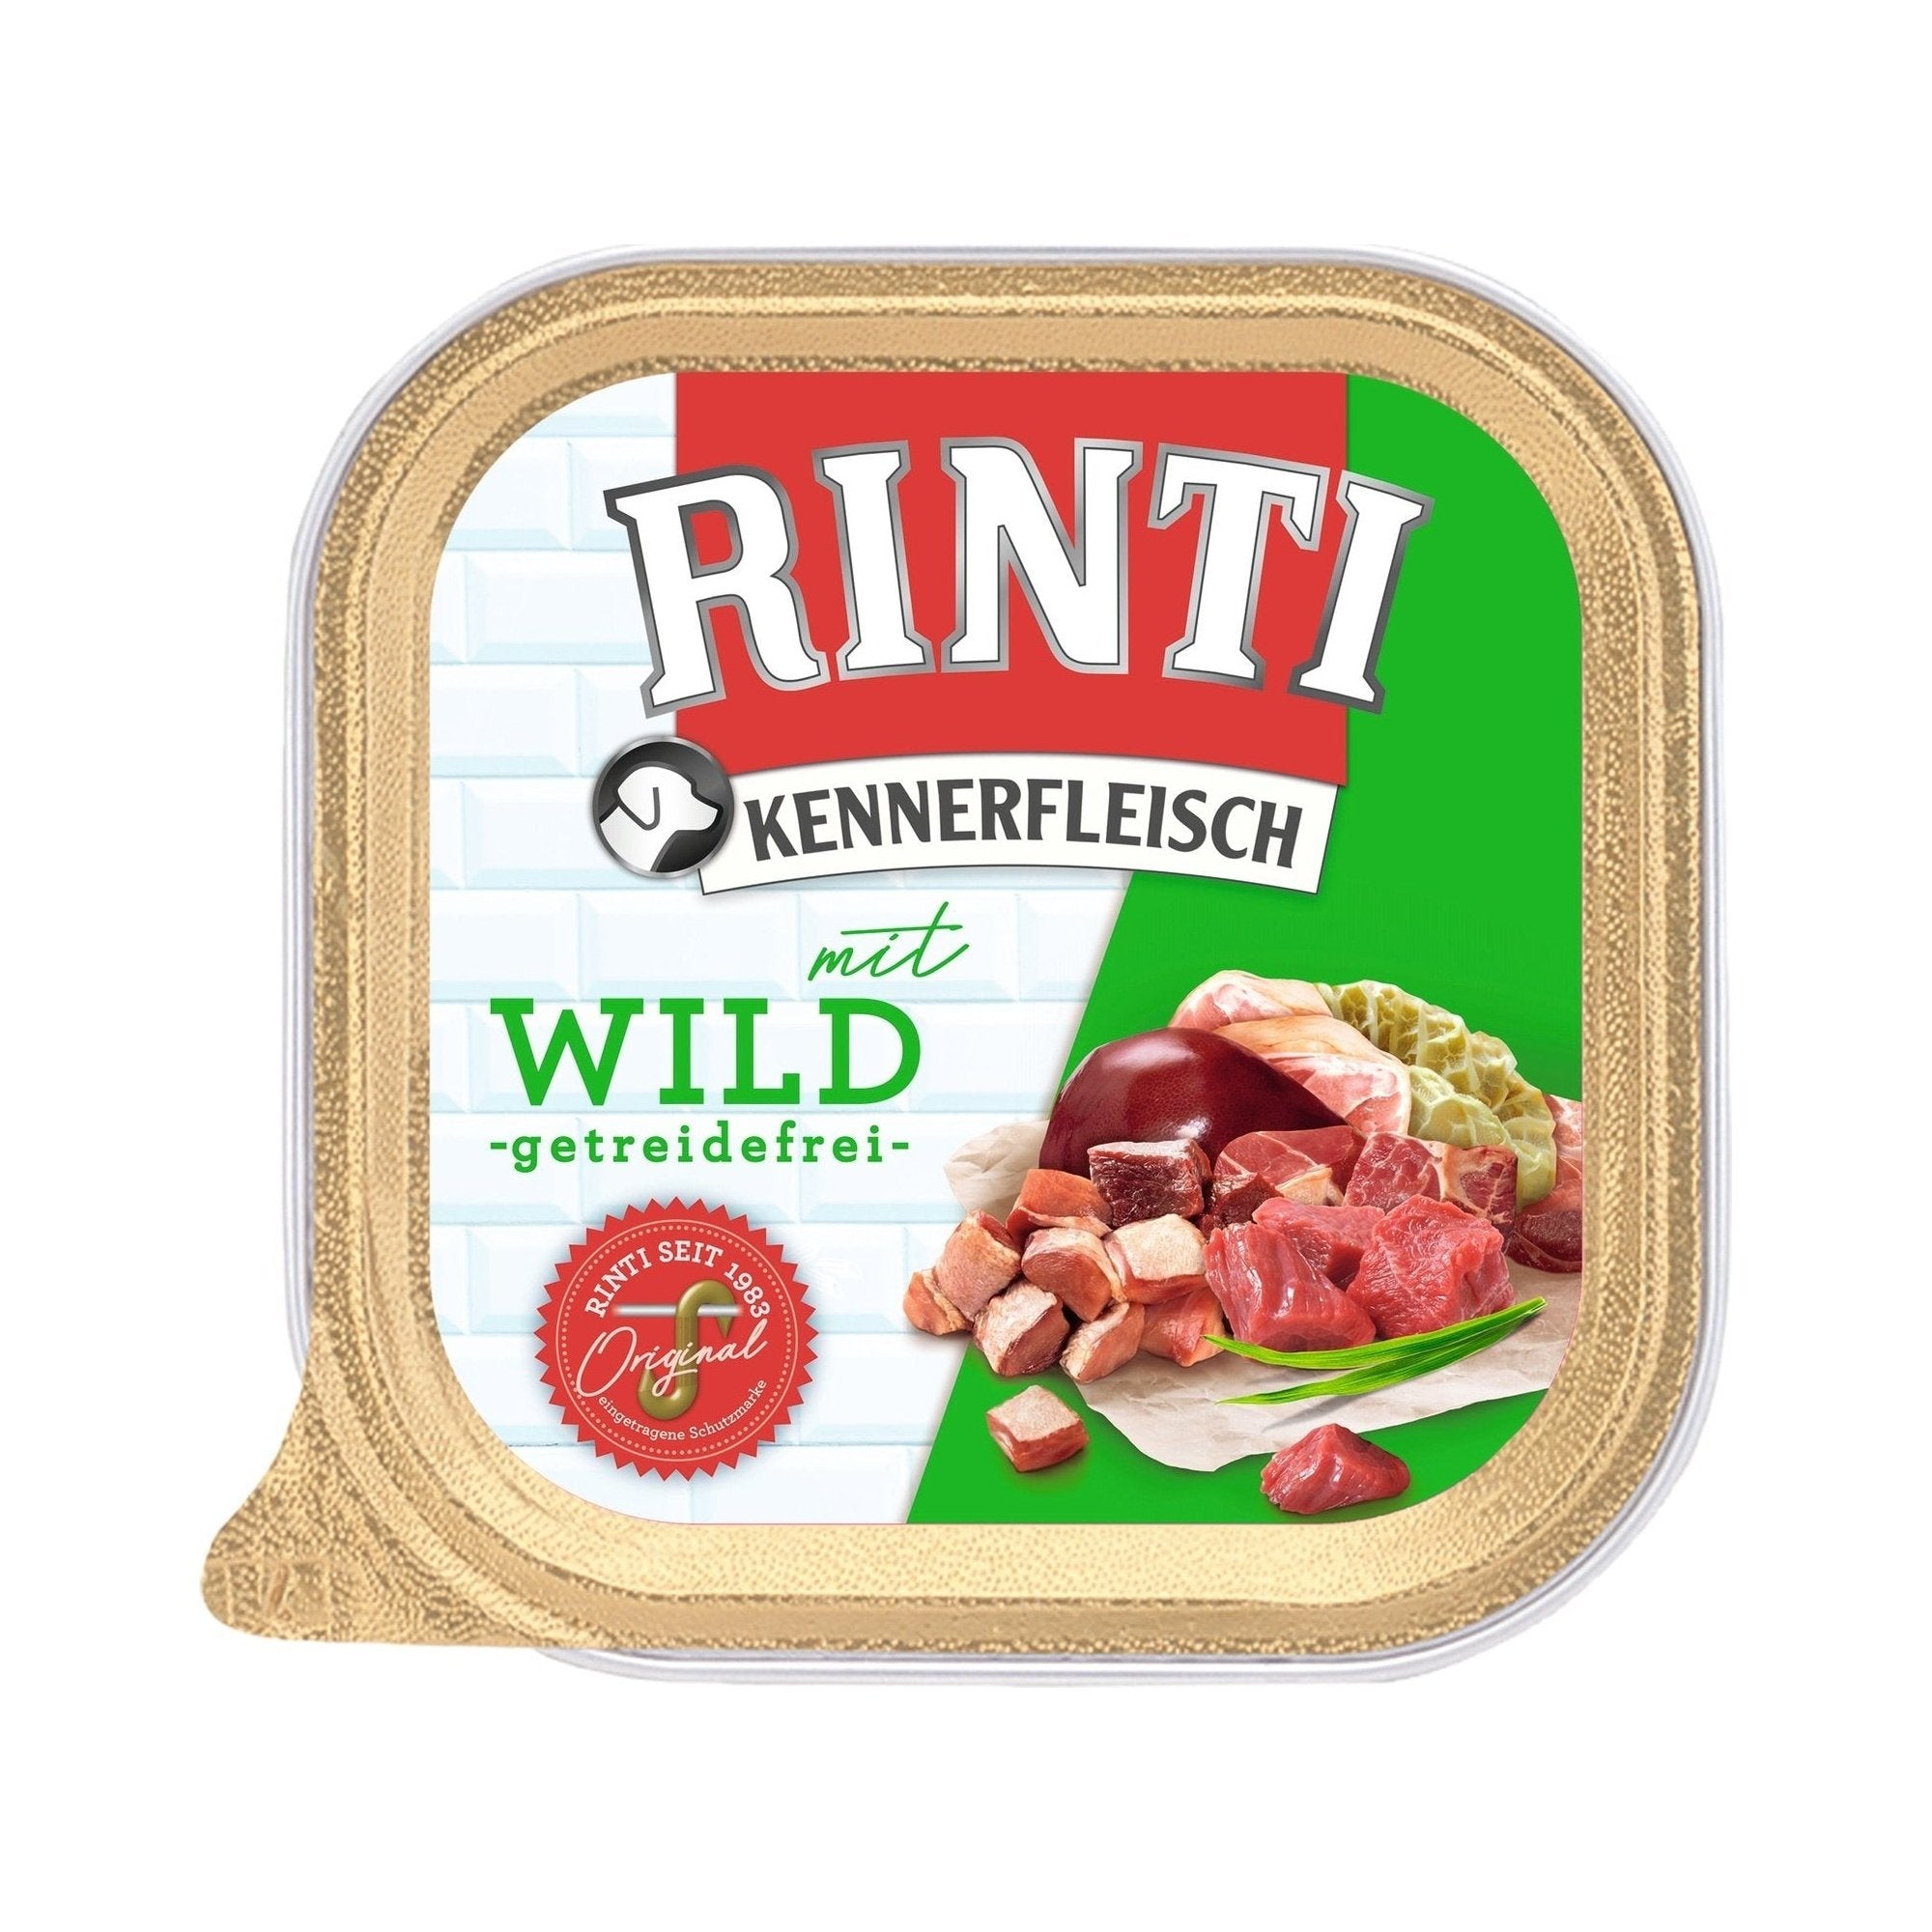 Rinti Kennerfleisch Plus Wild - zoo.de